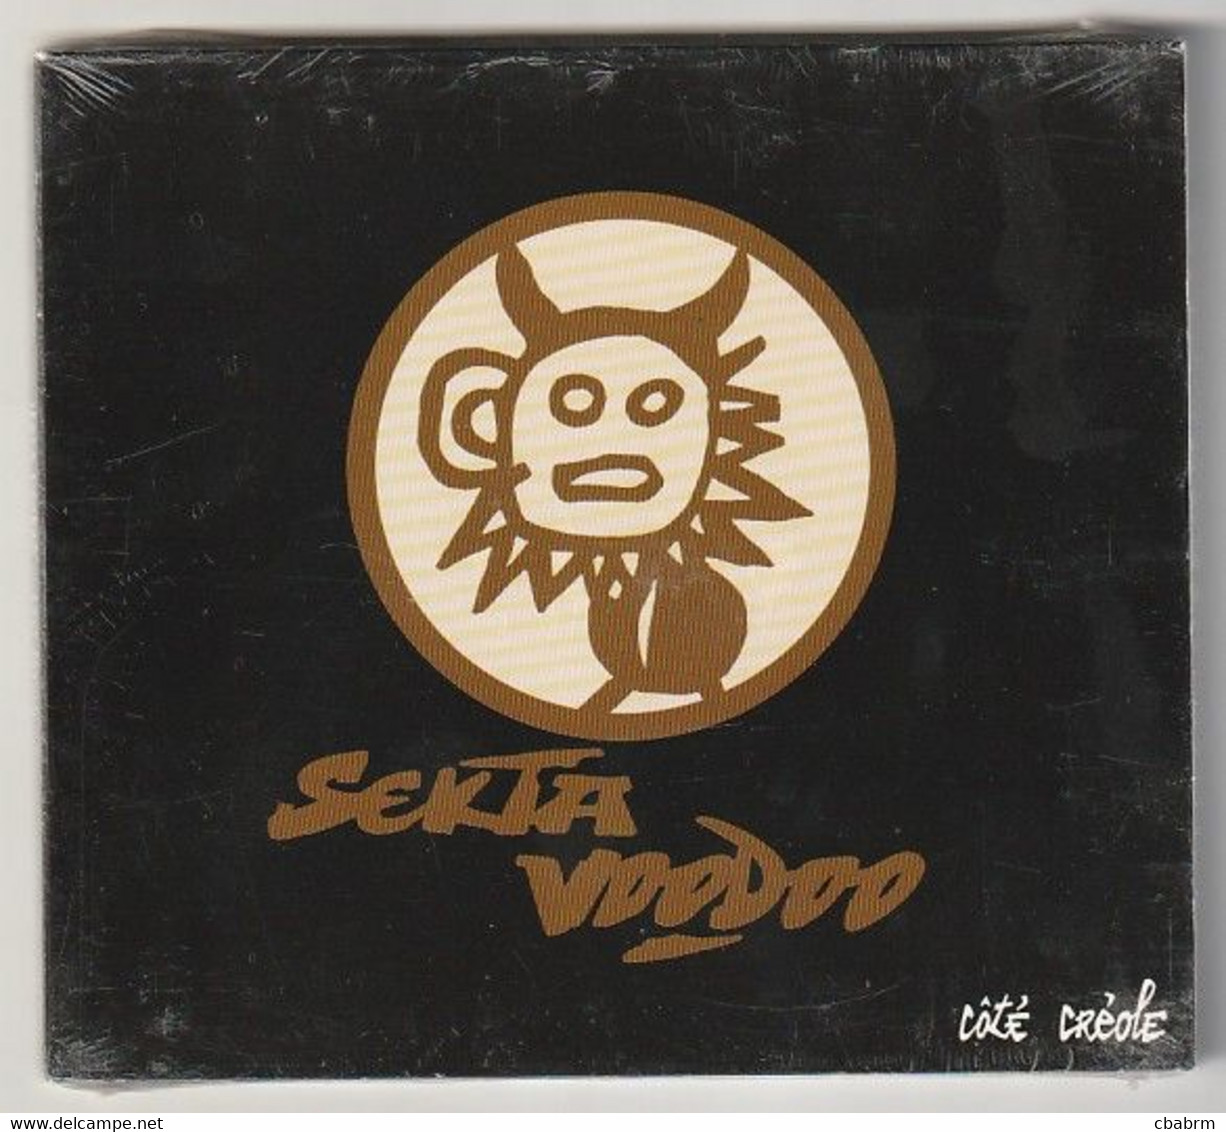 CD DIGIPACK SEKTA VOODOO COTE CREOLE FRANCE 1999 Atmosphériques ‎– 2347-2 NEUF - Rap & Hip Hop